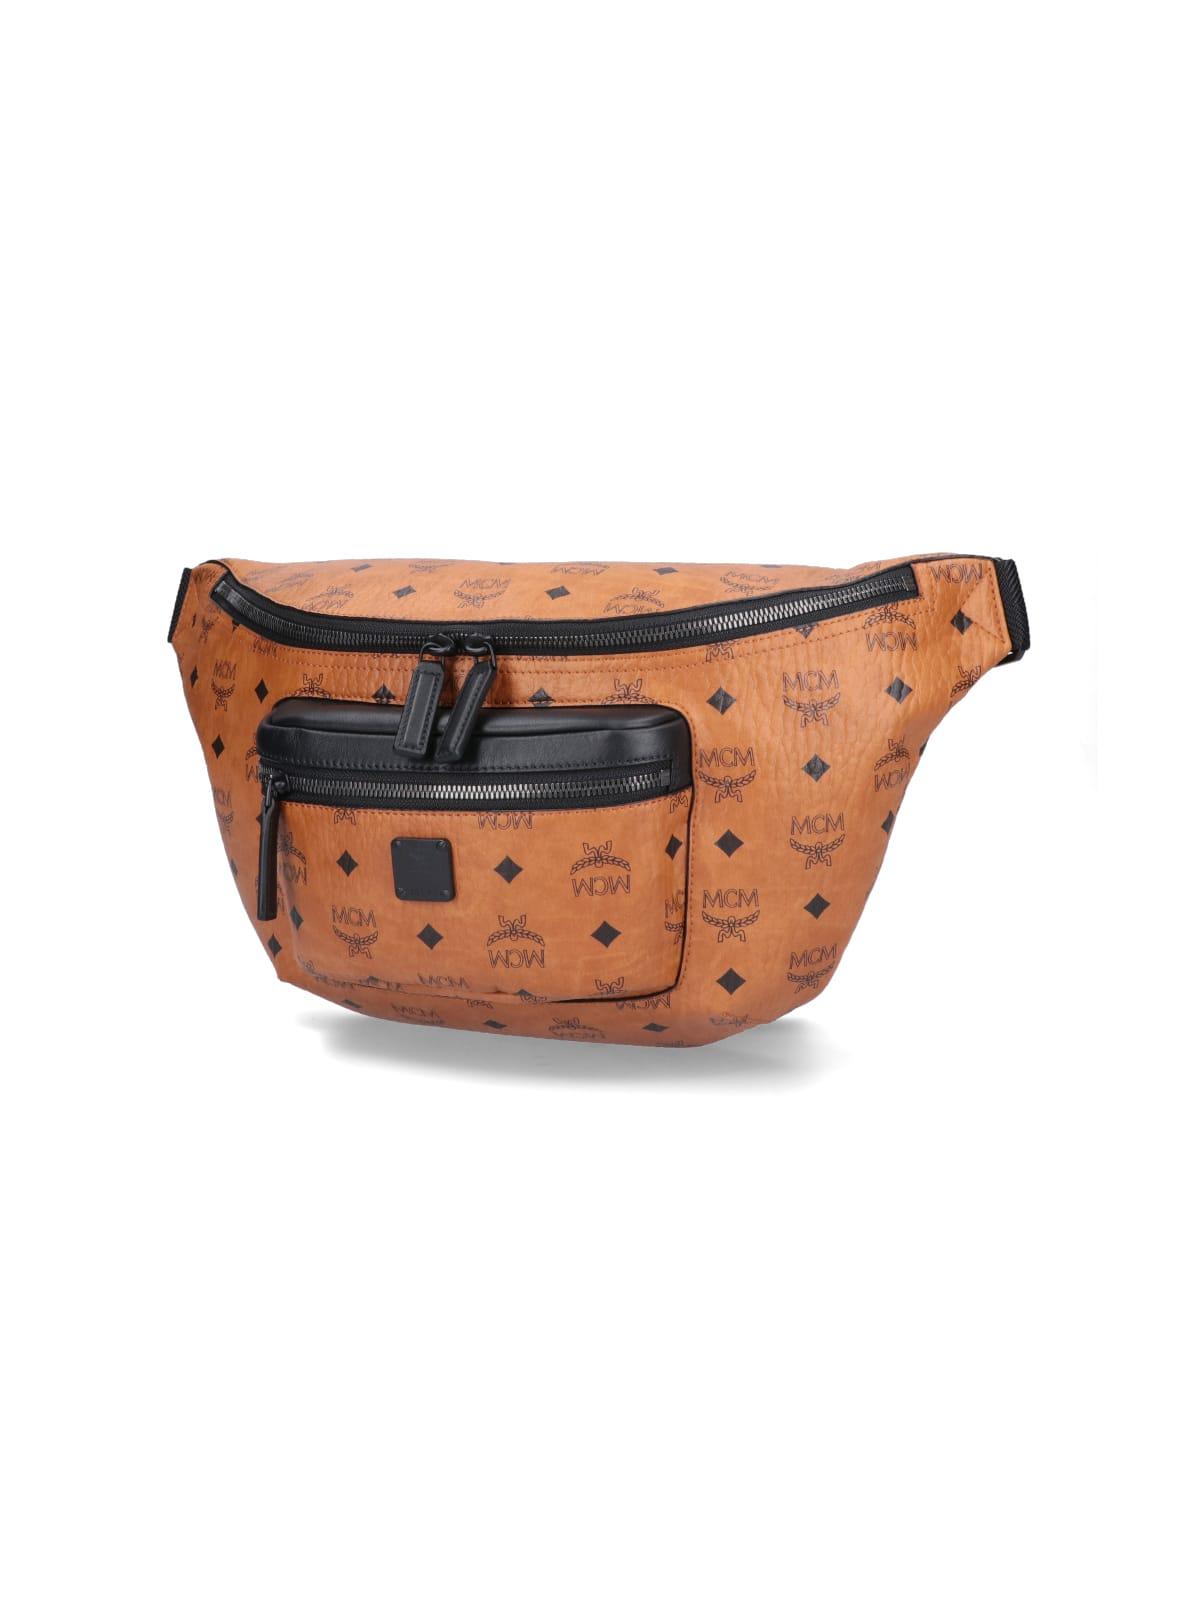 Mcm Medium Fursten Belt Bag in Maxi Visetos - Cognac